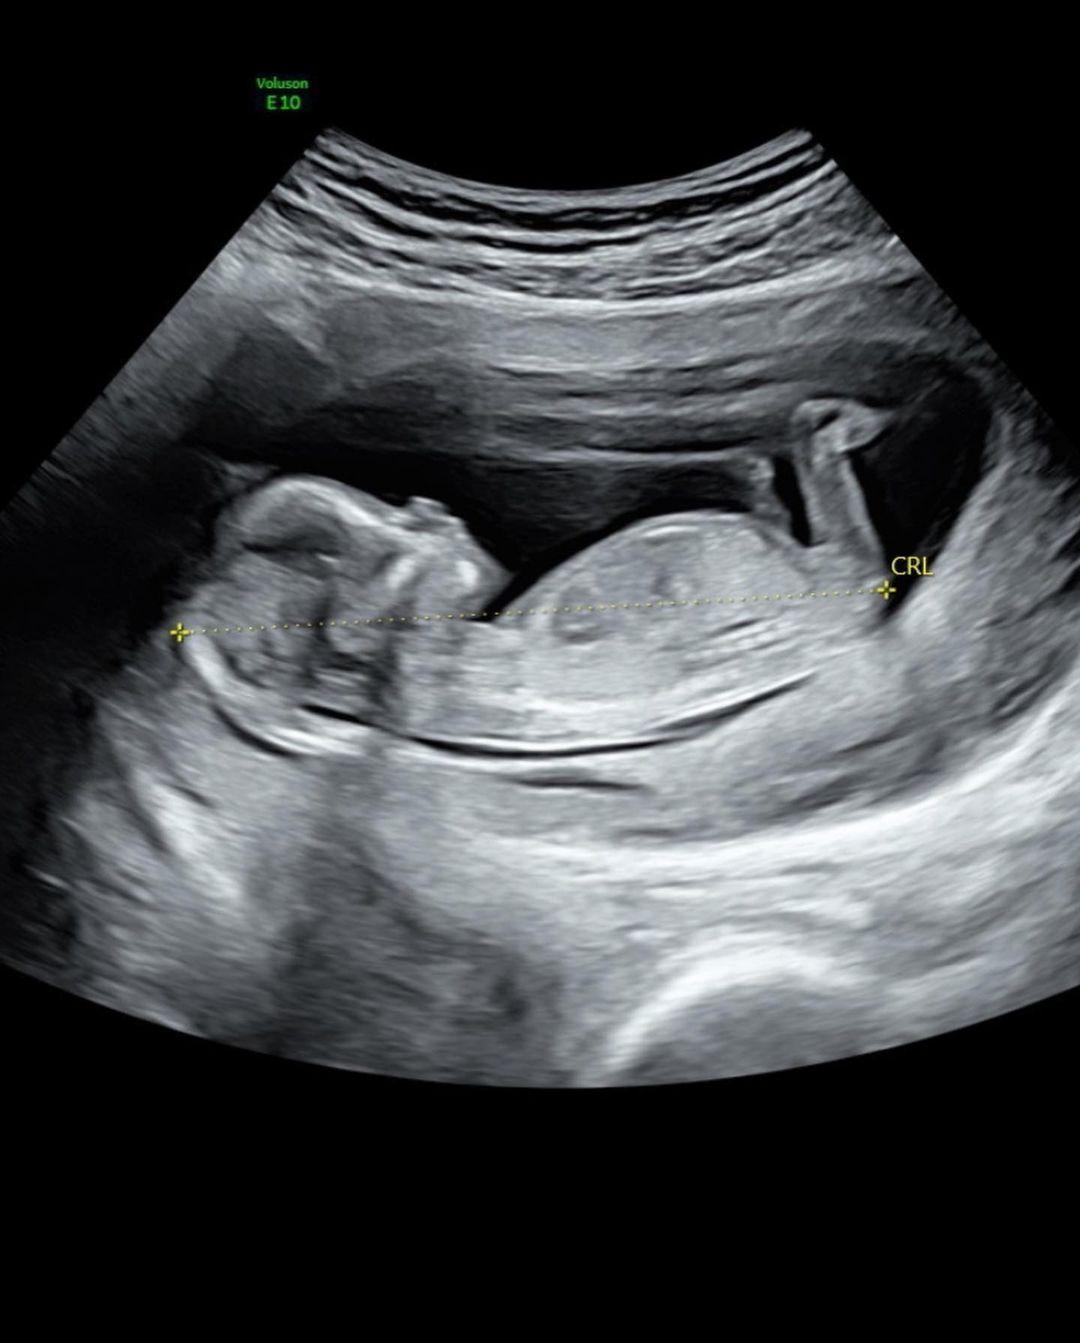 Natalie Joy's ultrasound